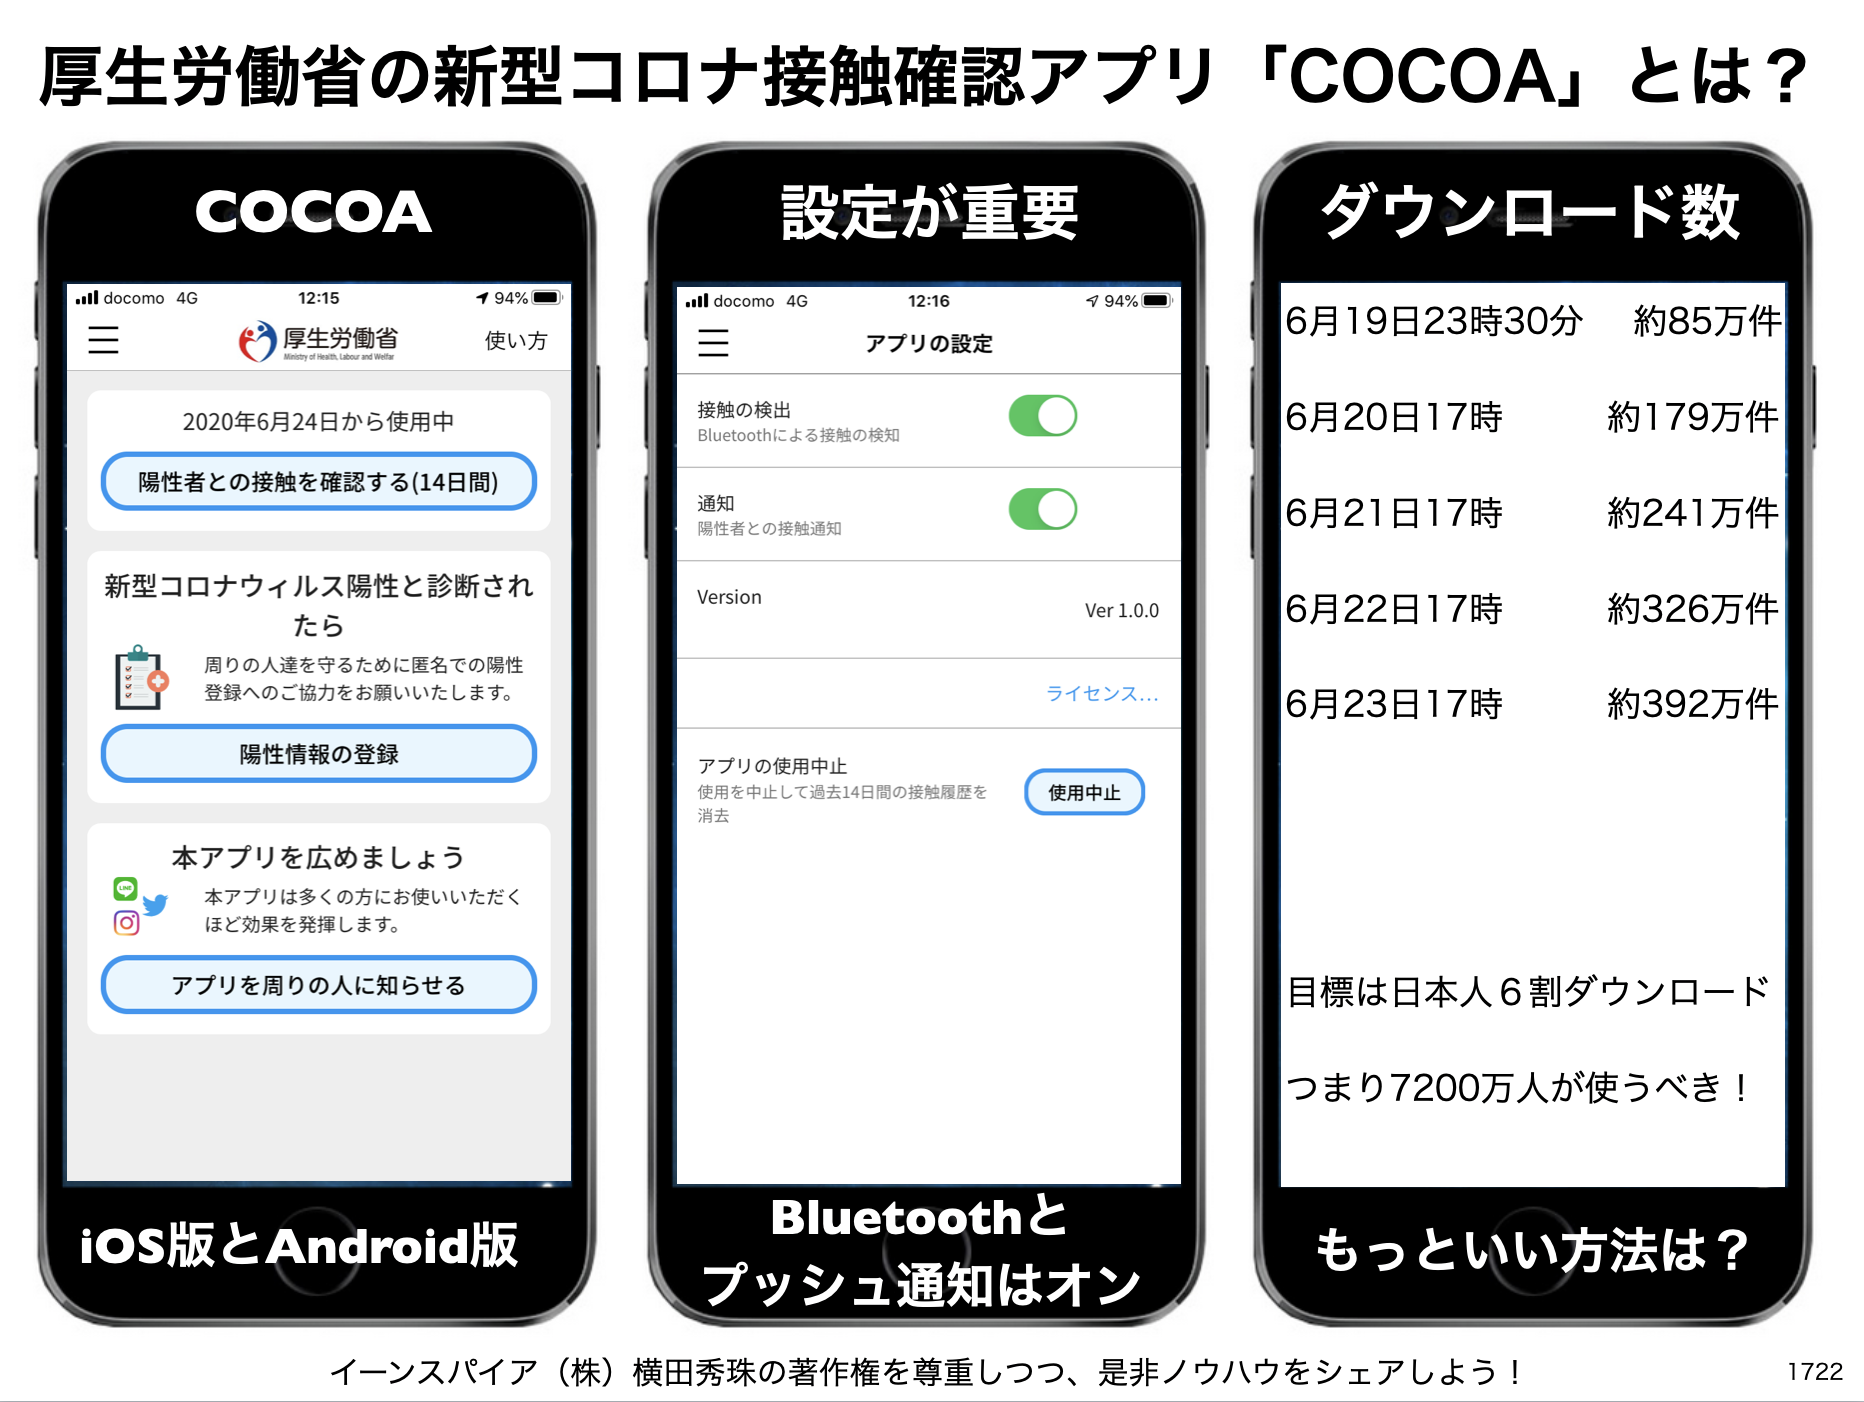 新型コロナウイルス接触確認アプリ #COCOA まとめ随時更新